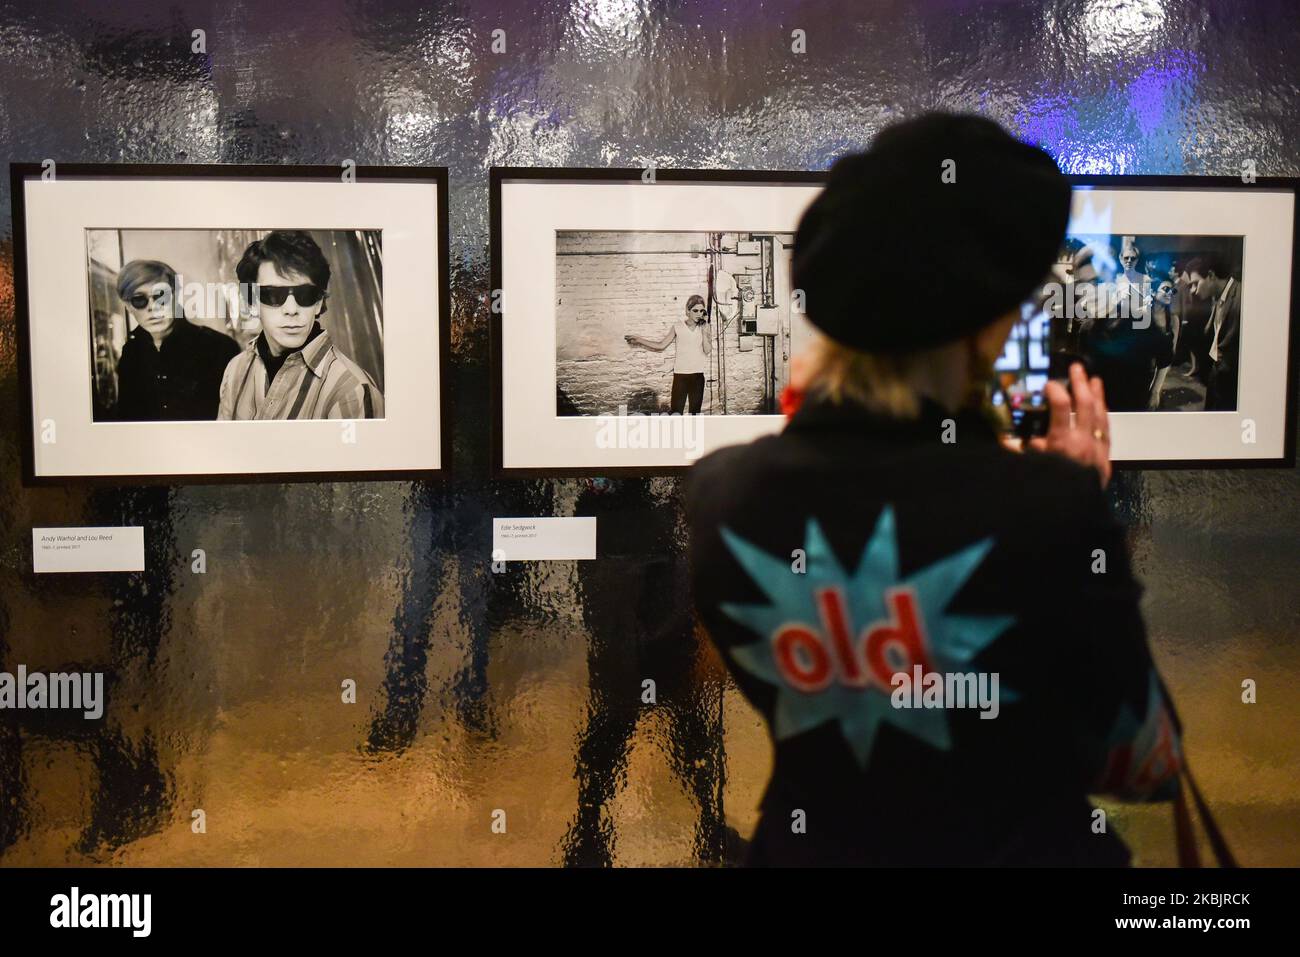 Un visiteur prend des photos de l'artiste américain Andy Warhol avec Lou Reed lors d'un aperçu de la presse pour l'exposition Andy Warhol à venir au Tate Modern de Londres sur 10 mars 2020. - L'exposition est prévue de 12 mars à 6 septembre. LIMITÉ À L'USAGE ÉDITORIAL - MENTION OBLIGATOIRE DE L'ARTISTE LORS DE LA PUBLICATION - POUR ILLUSTRER L'ÉVÉNEMENT TEL QUE SPÉCIFIÉ DANS LA LÉGENDE (PHOTO D'ALBERTO PEZZALI/NURPHOTO) Banque D'Images